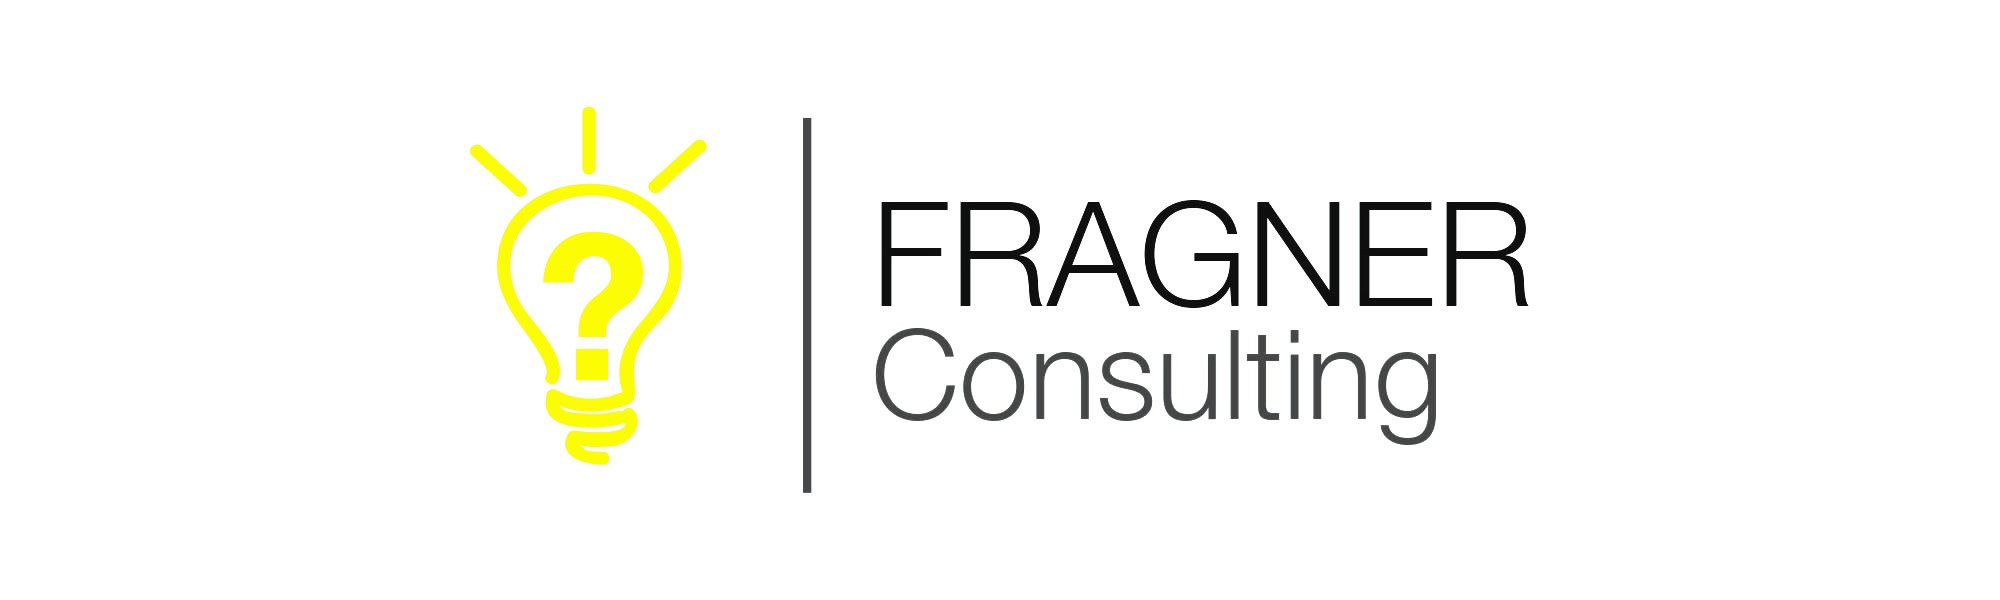 Dieter Fragner Consulting Logo